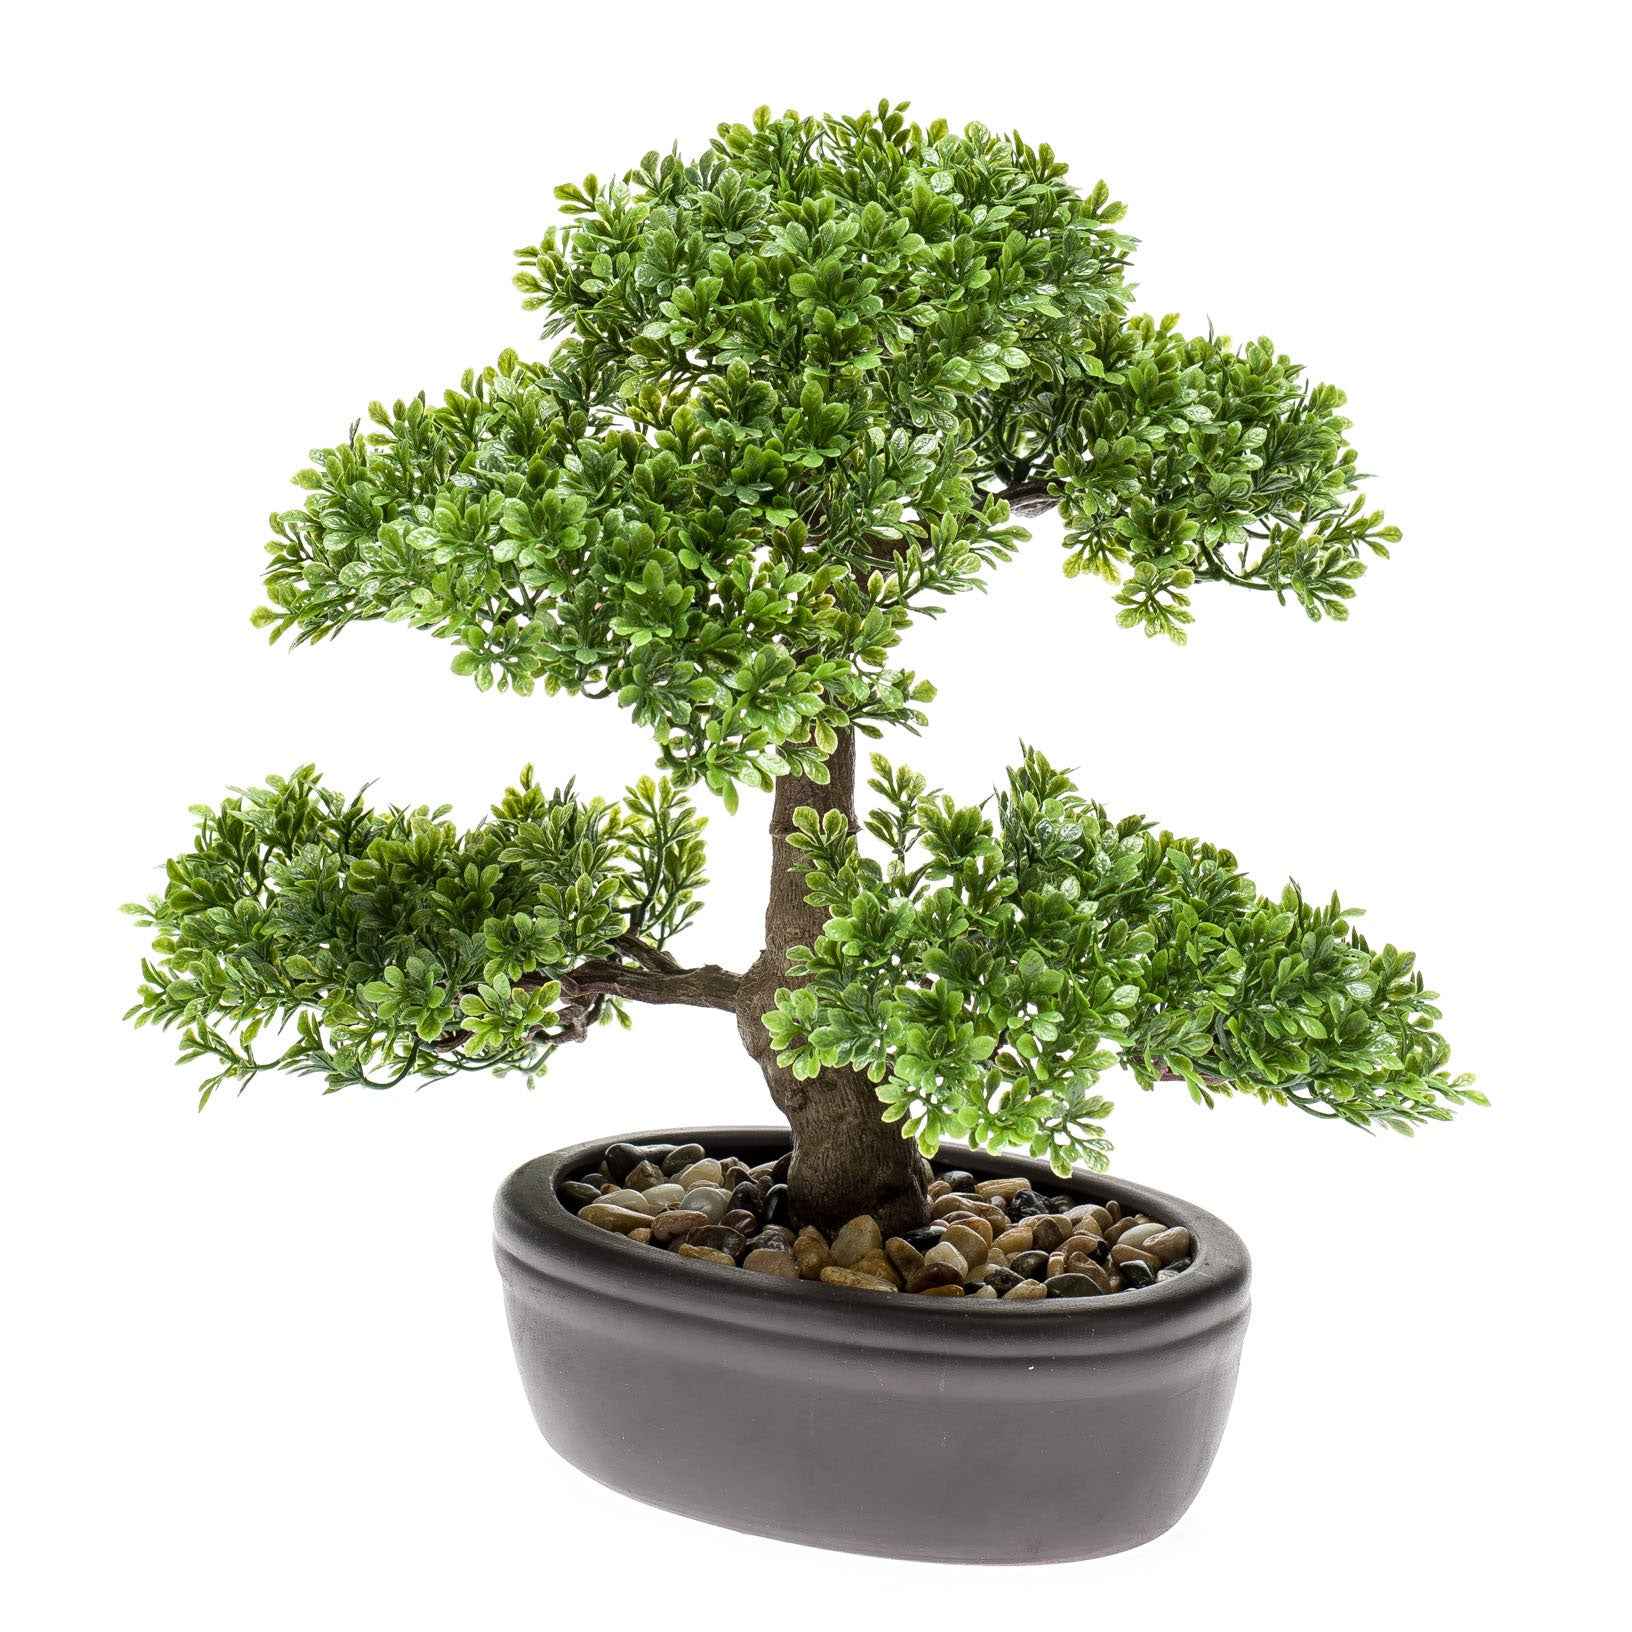 Plante artificielle Bonsai Ficus avec cache-pot marron - Plantes artificielles populaires